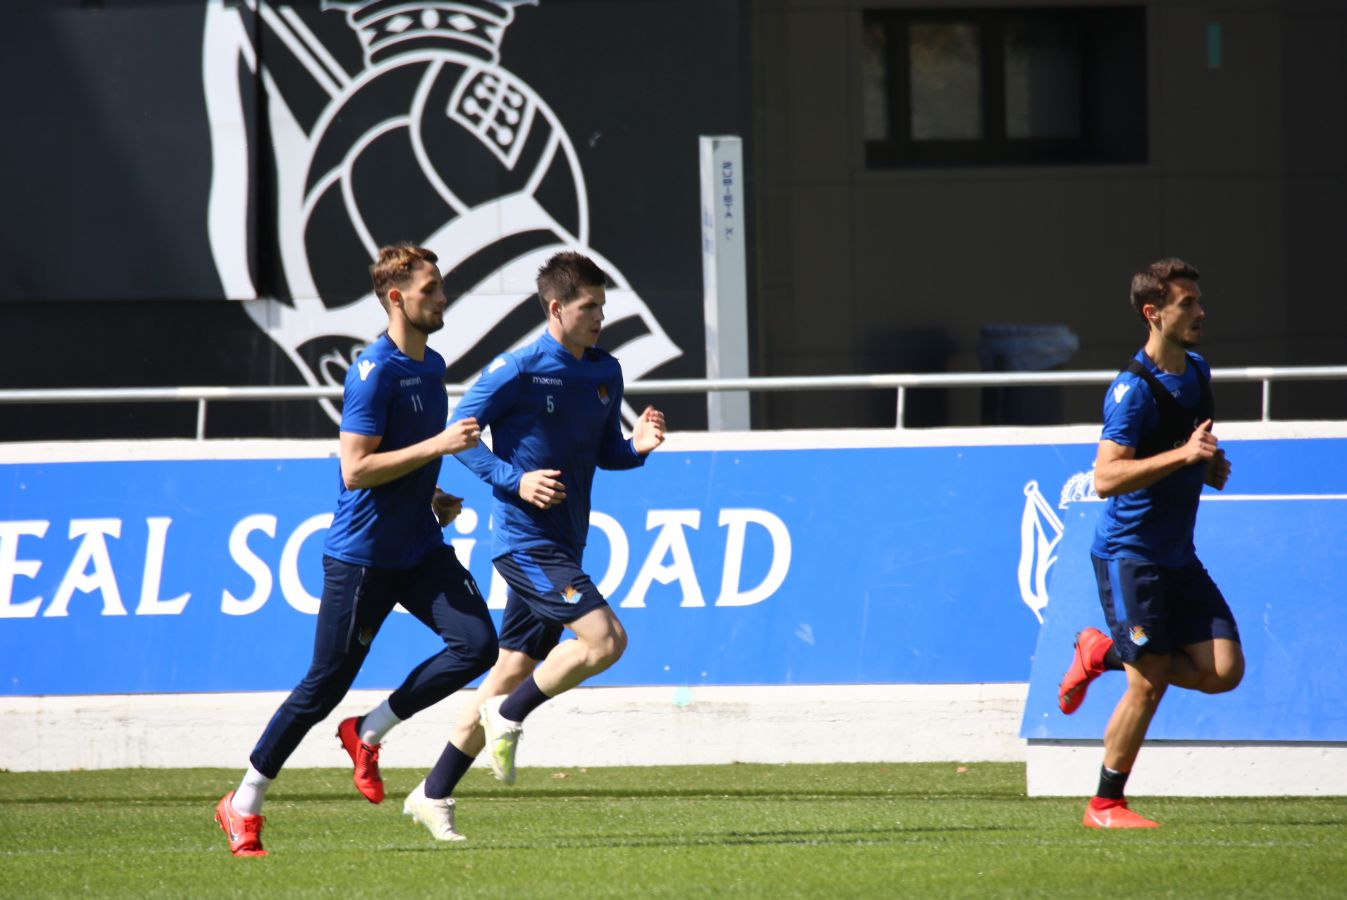 La Real Sociedad ha vuelto a los entrenamientos este lunes tras la victoria ante el Getafe en Anoeta. Illarramendi, Zurutuza y Llorente han entrenado con el grupo.